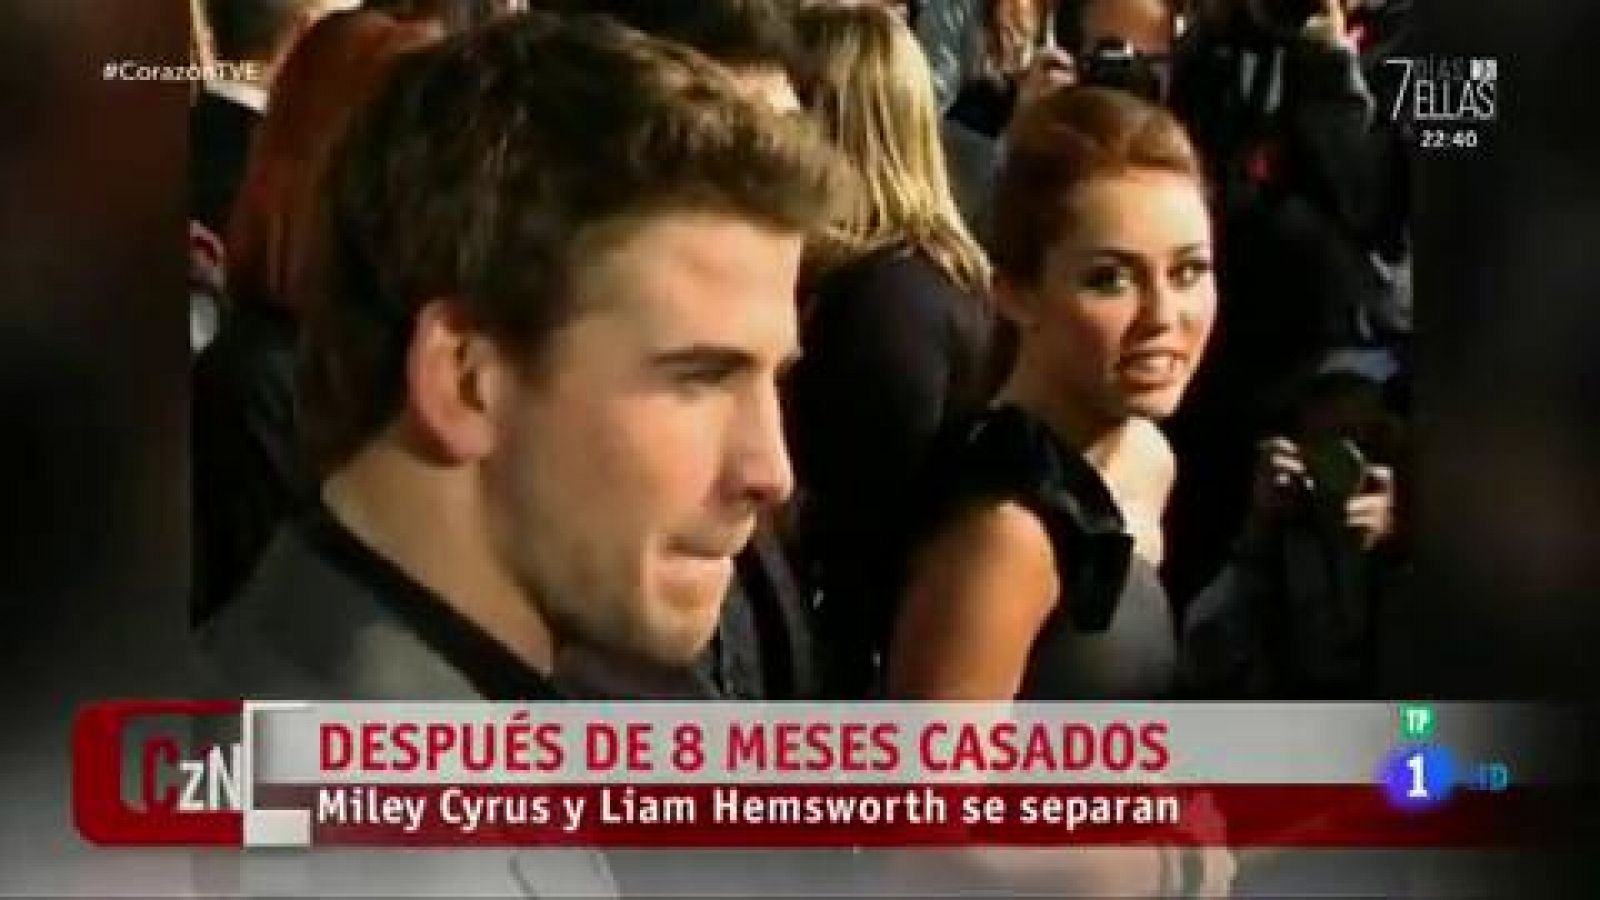 Corazón - Miley Cyrus y Liam Hemsworth se separan después de ocho meses casados - RTVE.es